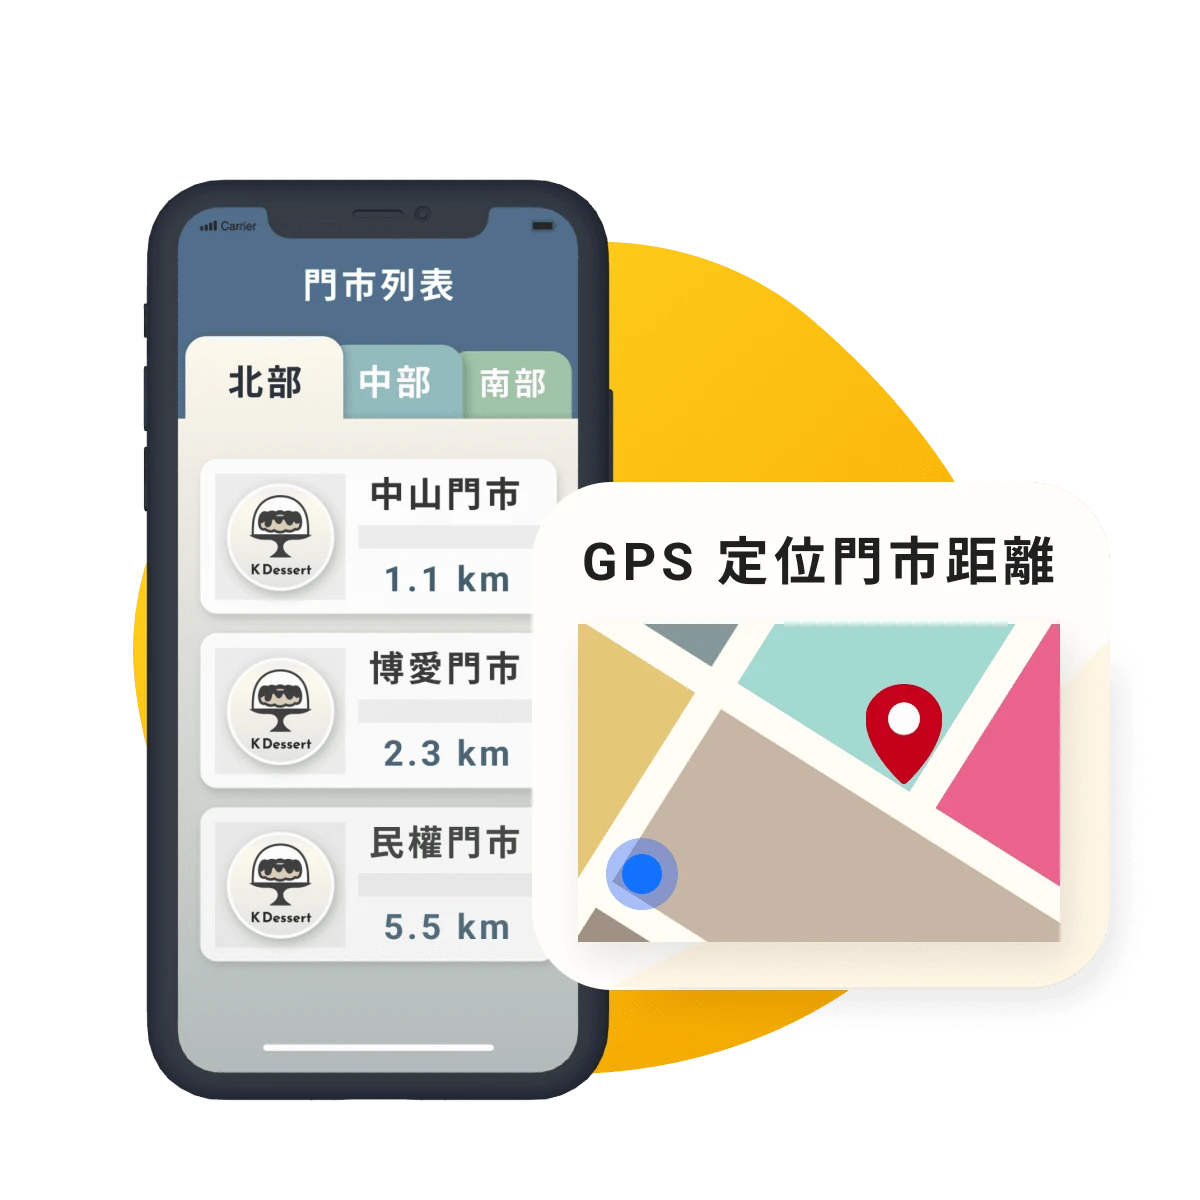 訂購模組也可依據會員的手機 GPS 定位位置，將門市所在地由近至遠排列，引導會員更快找到門市位置。By 威許移動